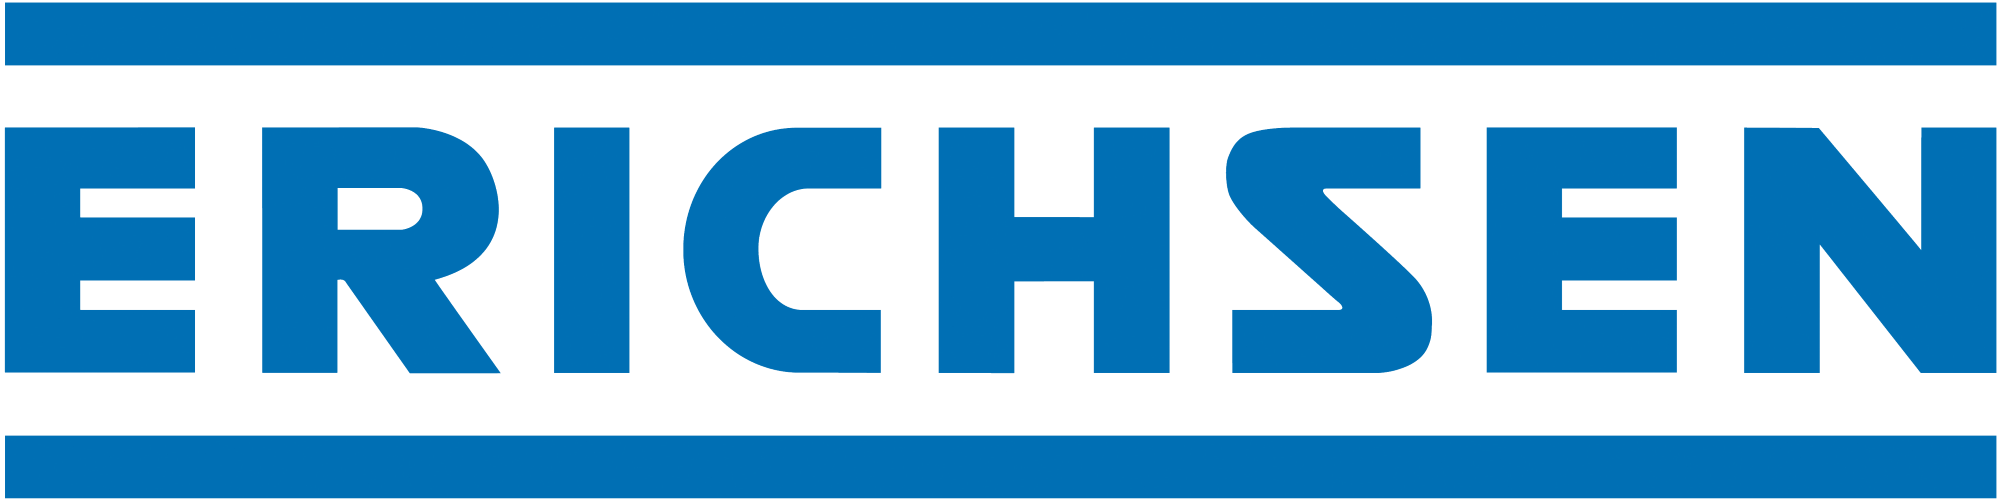 Erichsen logo